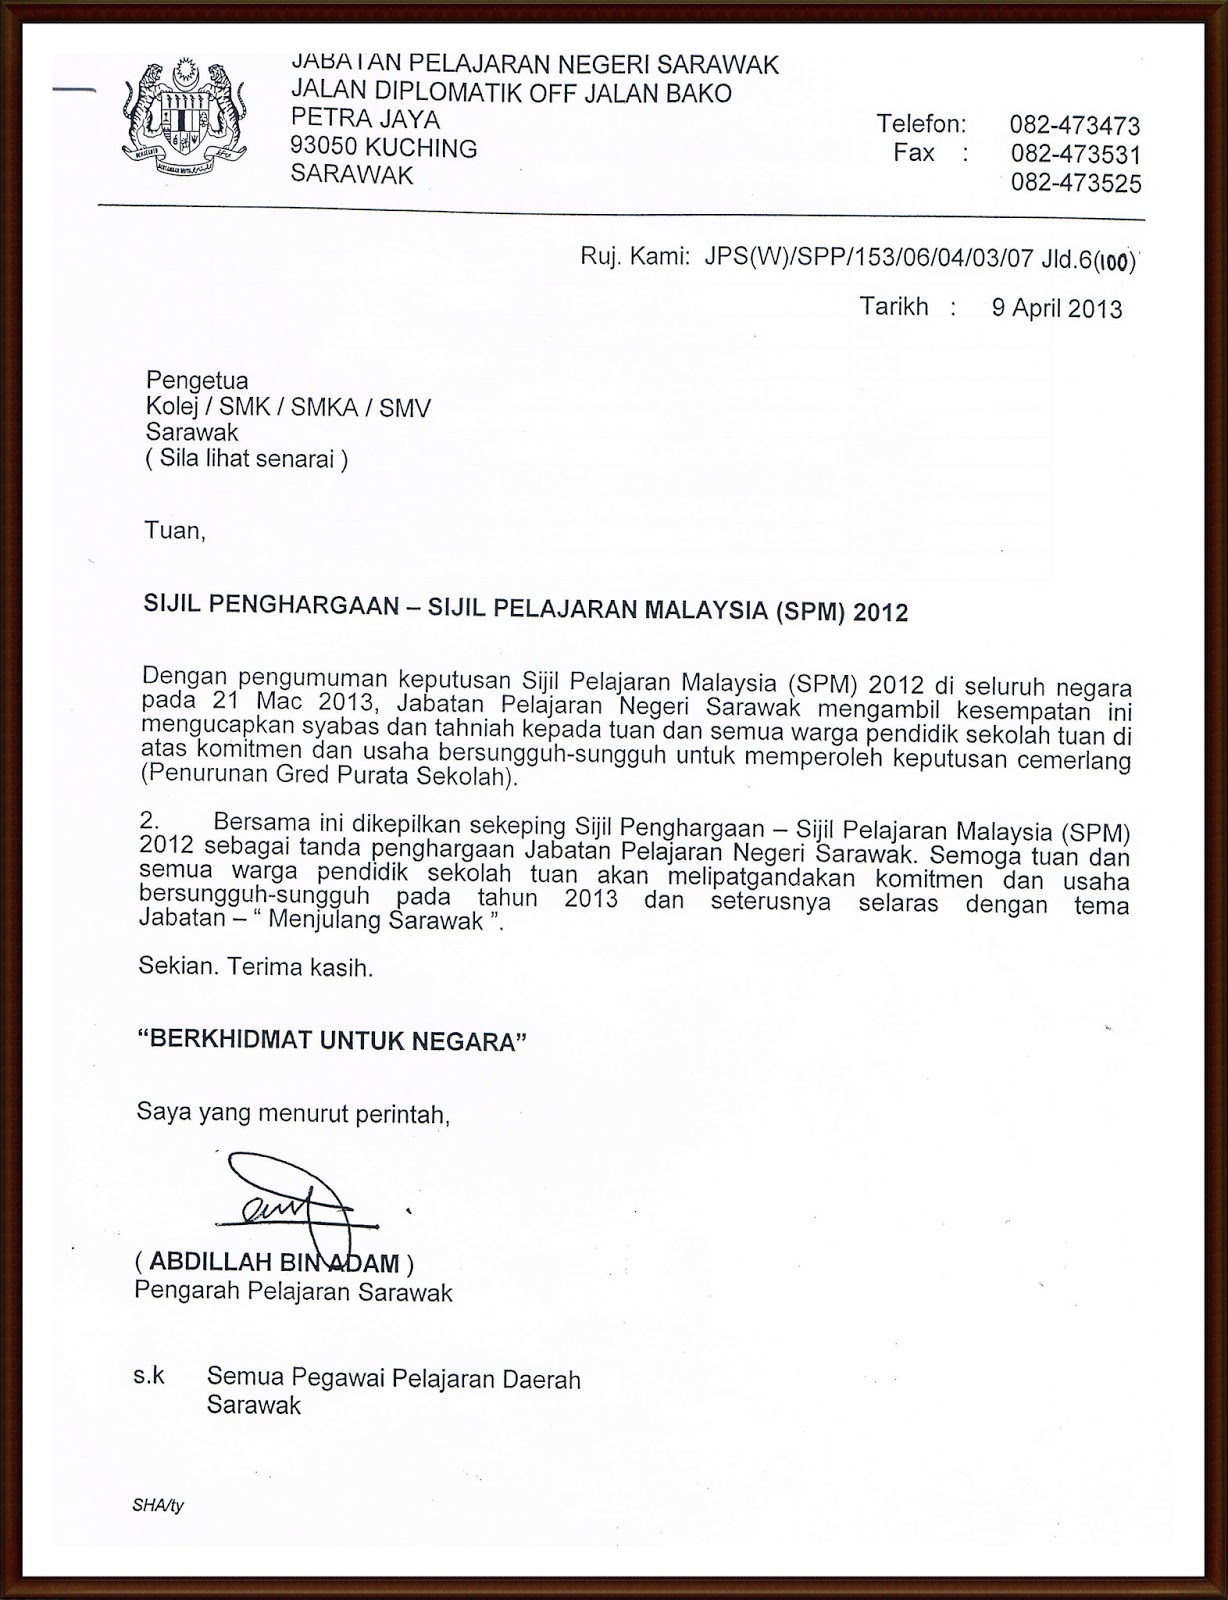 Surat Dan Sijil Penghargaan Dari Pengarah Pelajaran Negeri Sarawak | My